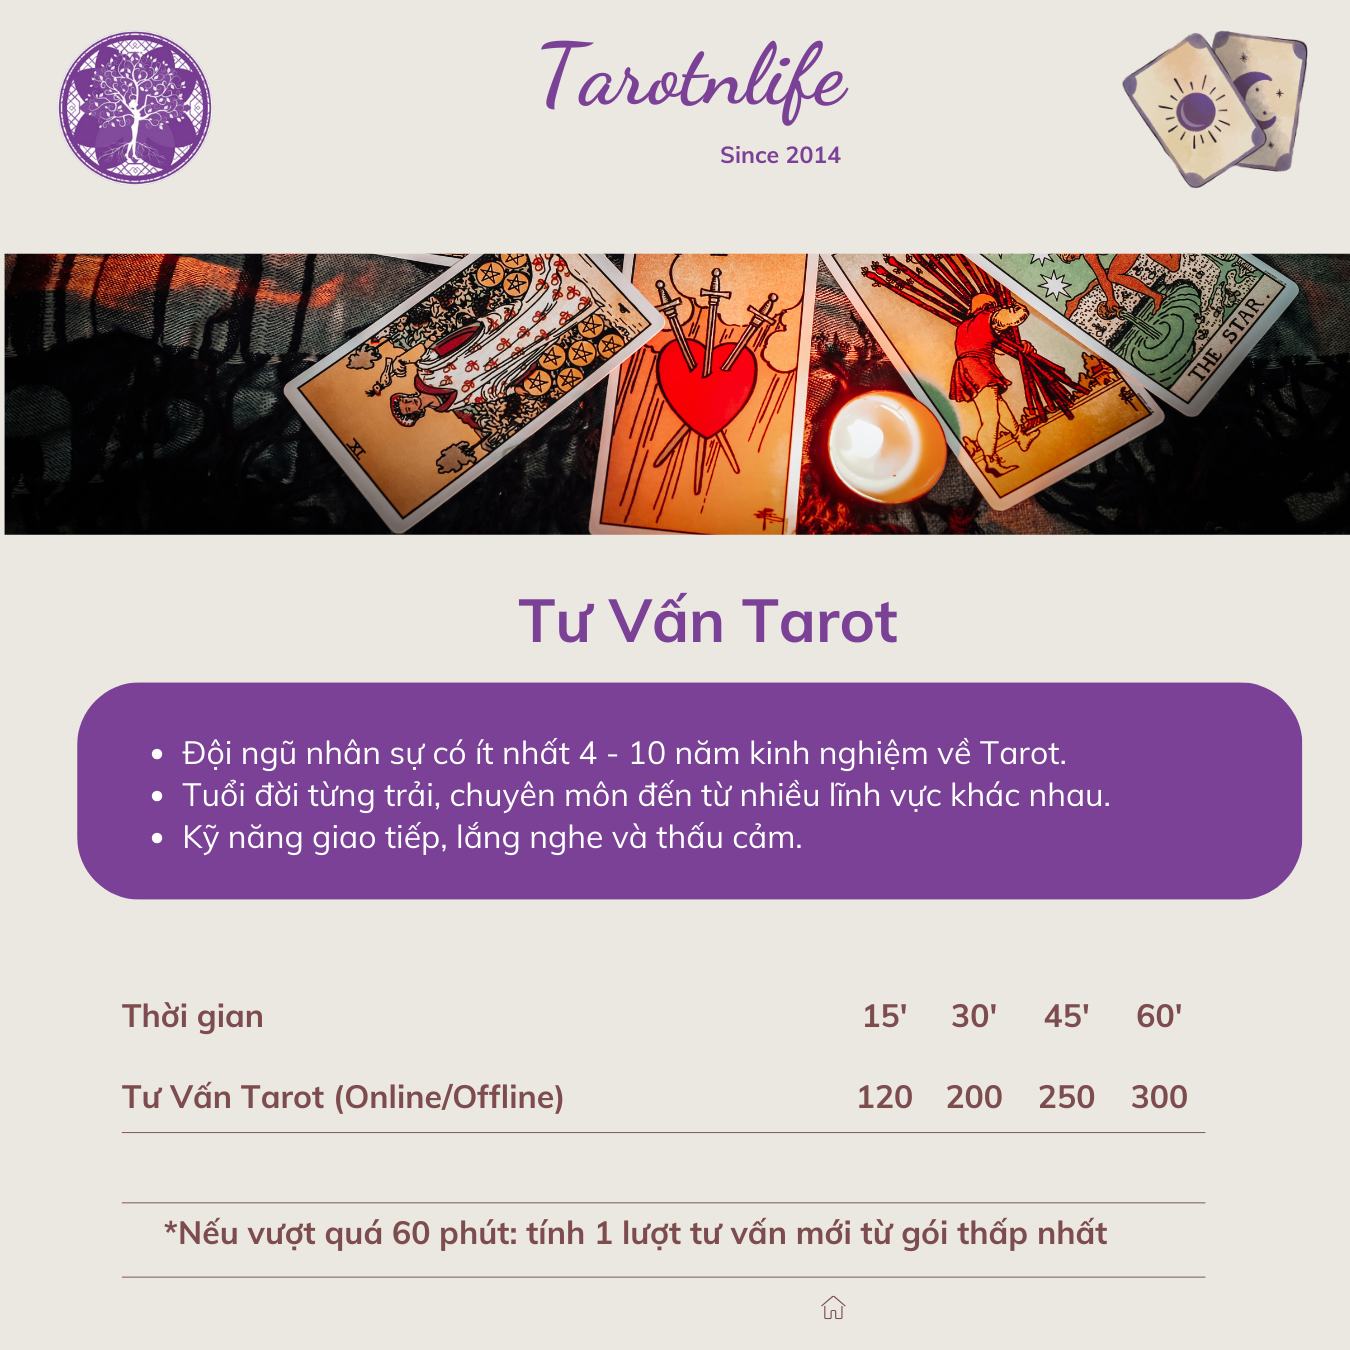 Tarot và Cuộc sống - Tarotnlife ảnh 2